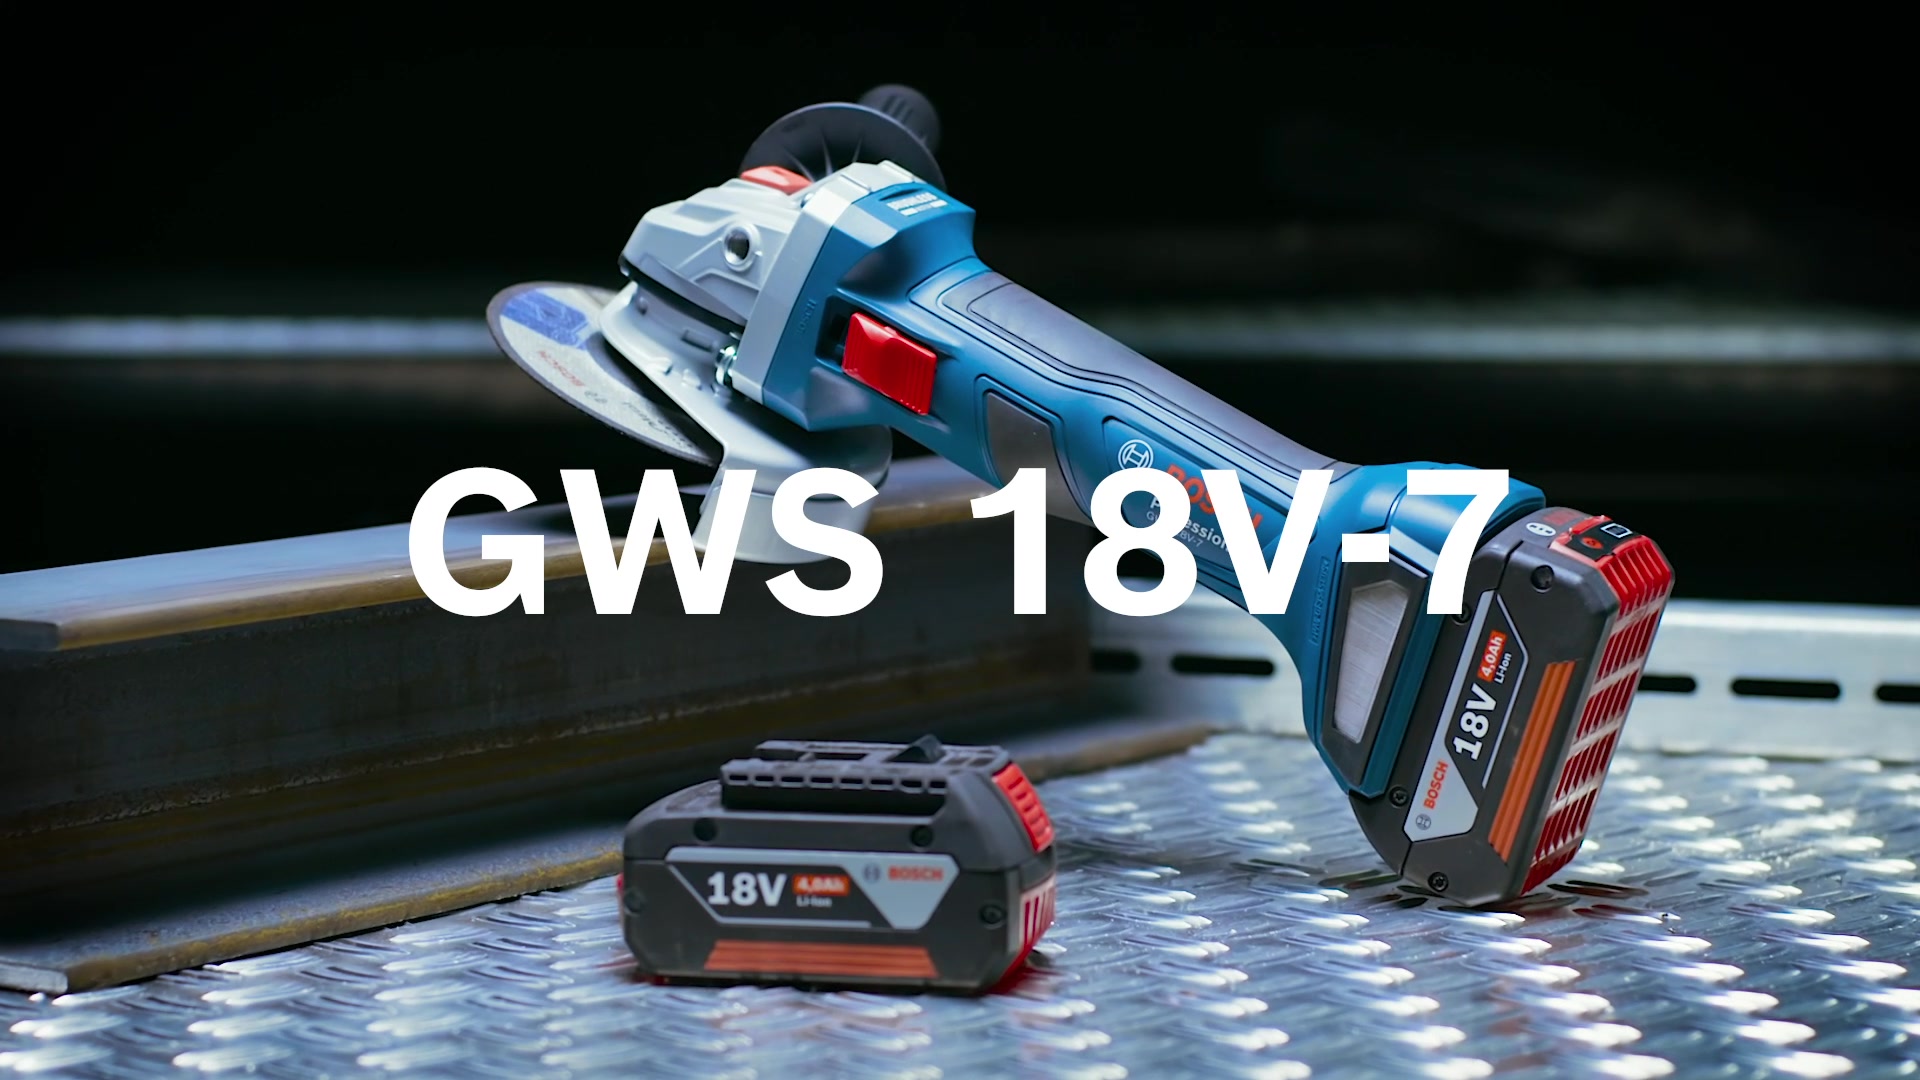 GWS 18V-7